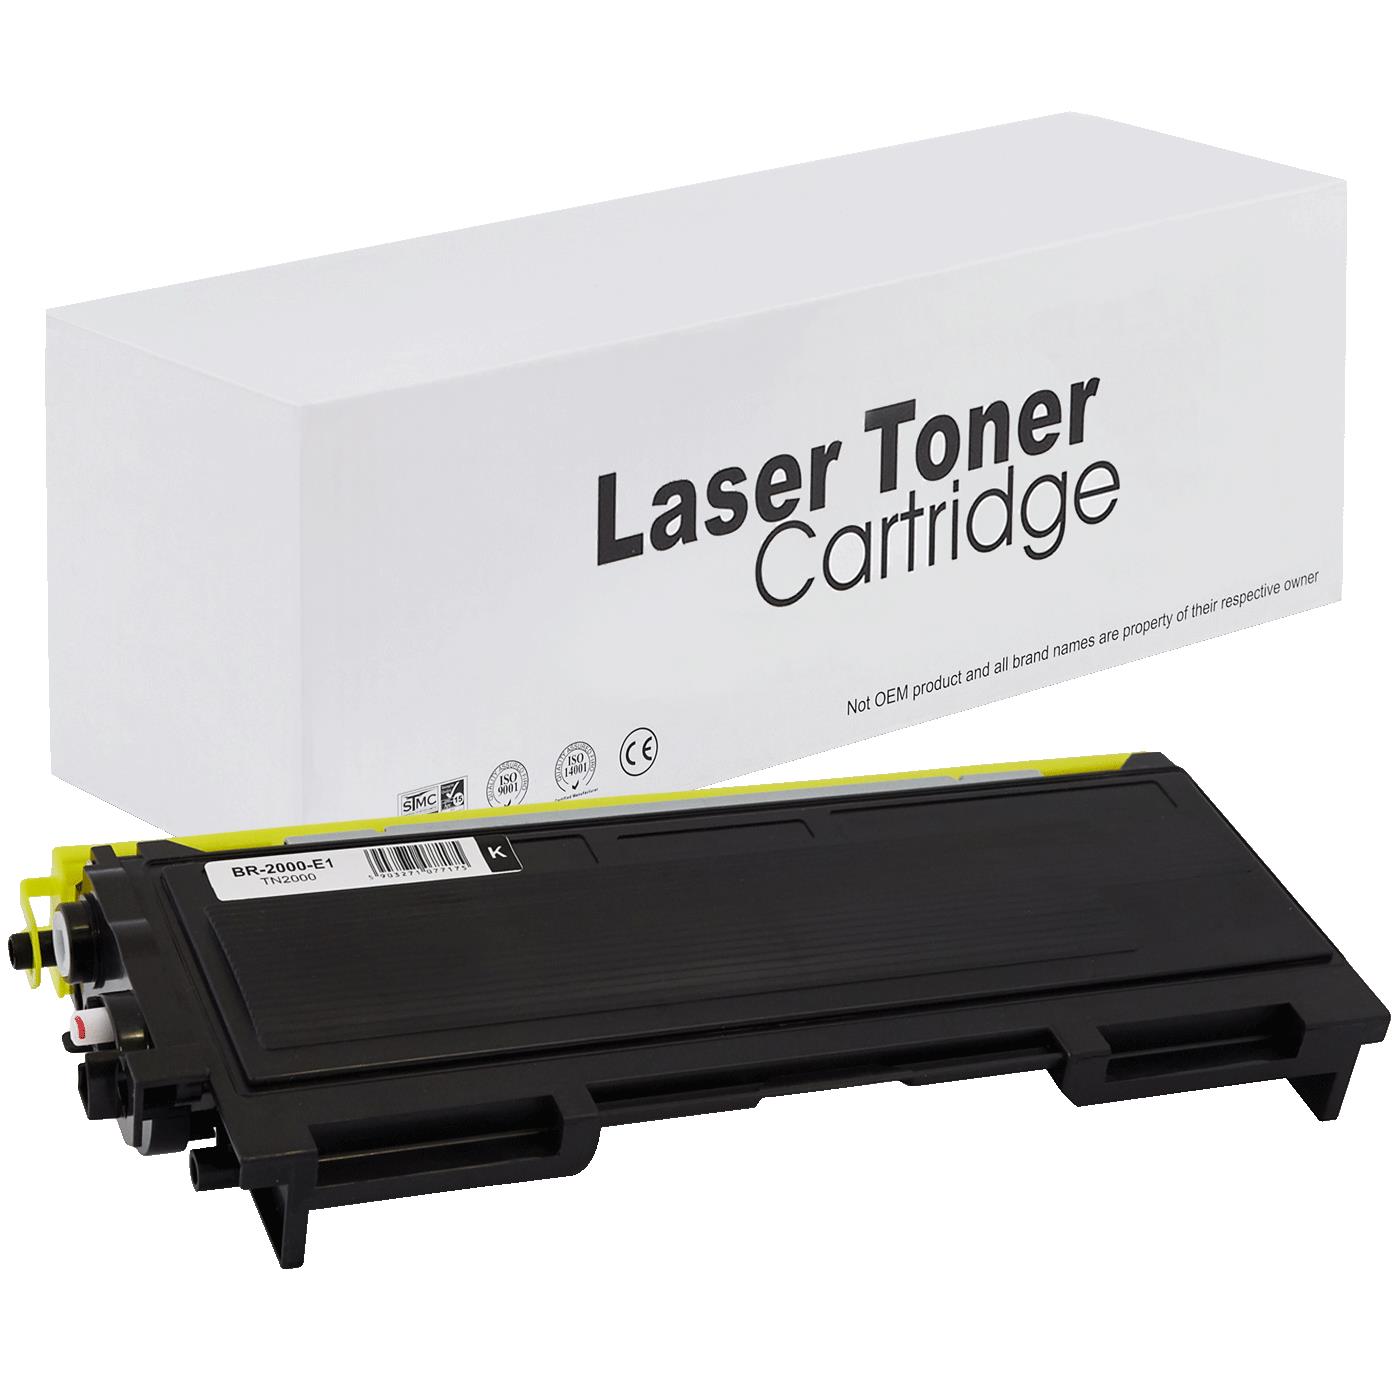 съвместима тонер касета за принтери и печатащи устройства на Brother DCP 7010 Toner BR-2000 | TN2000. Ниски цени, прецизно изпълнение, високо качество.